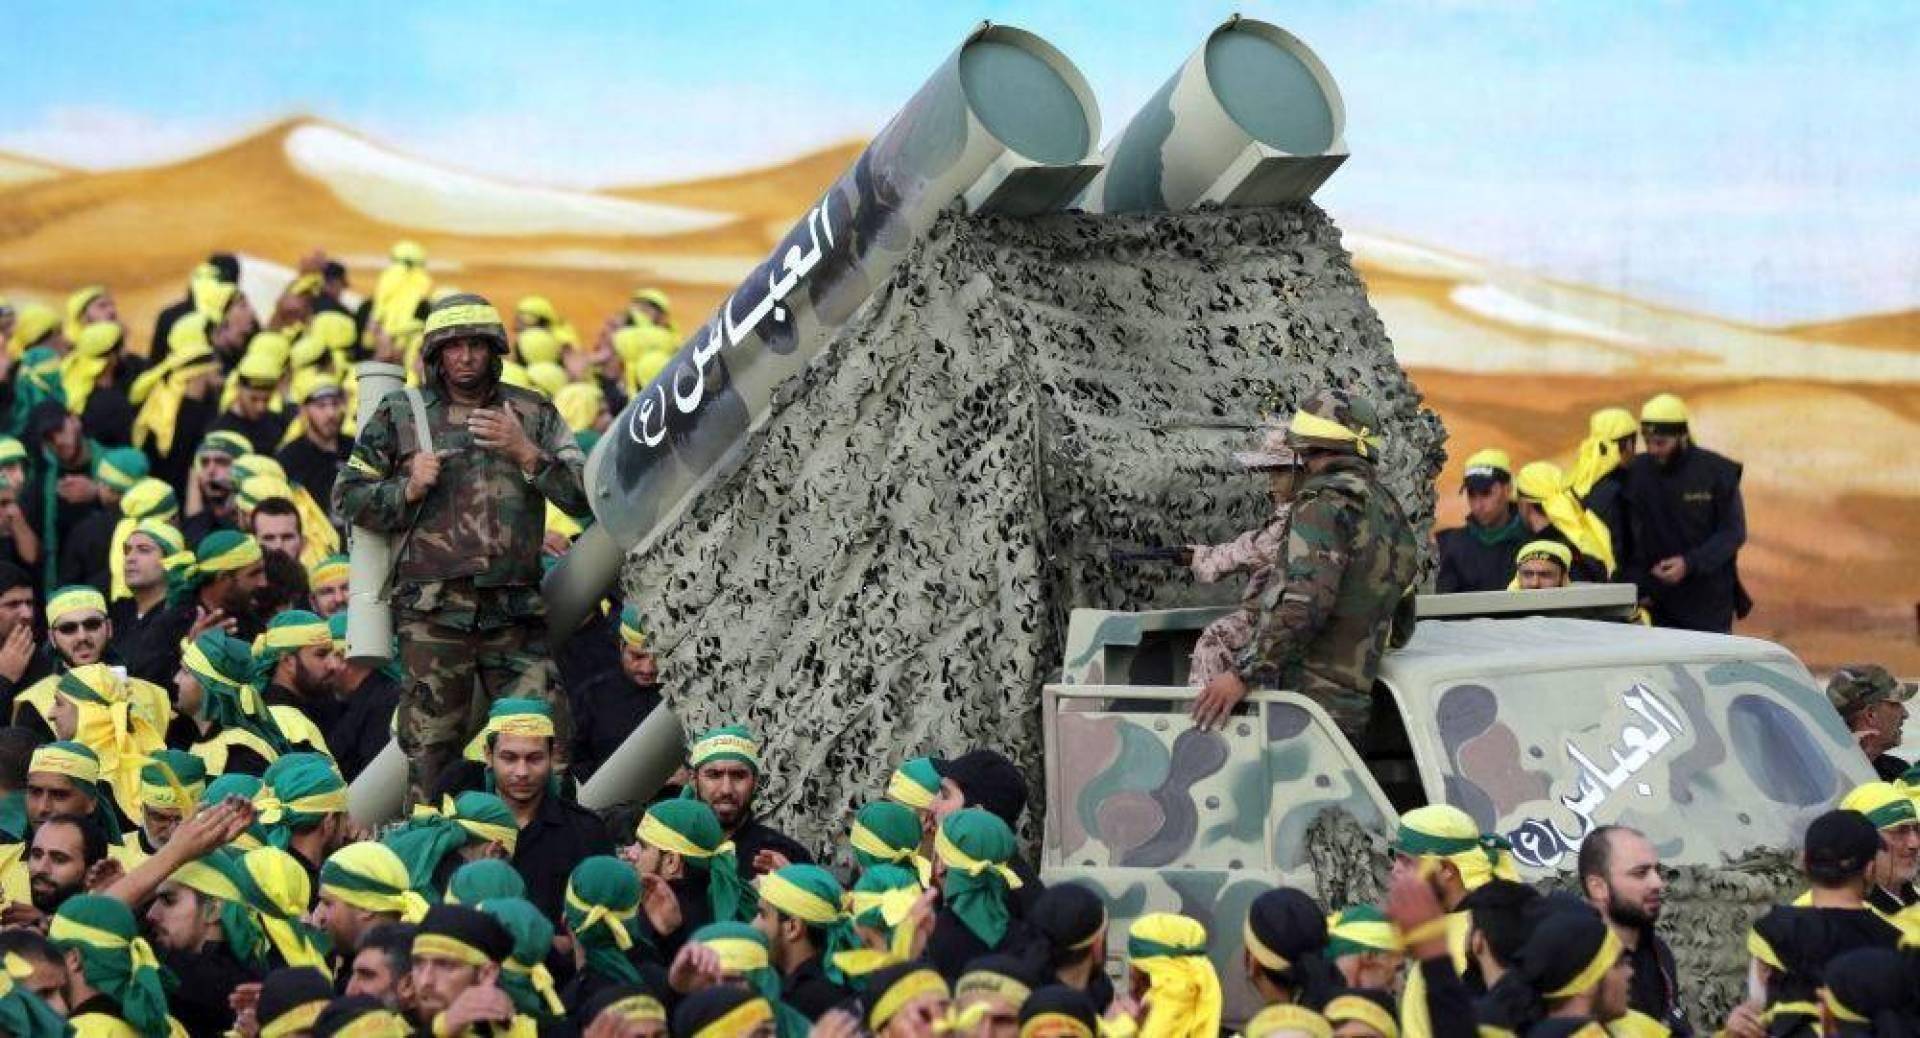 كتب الأستاذ كمال خلف: ست مفاجآت عسكرية جديدة متوقعة، في حال وقعت حرب مقبلة بين حزب الله وإسرائيل.